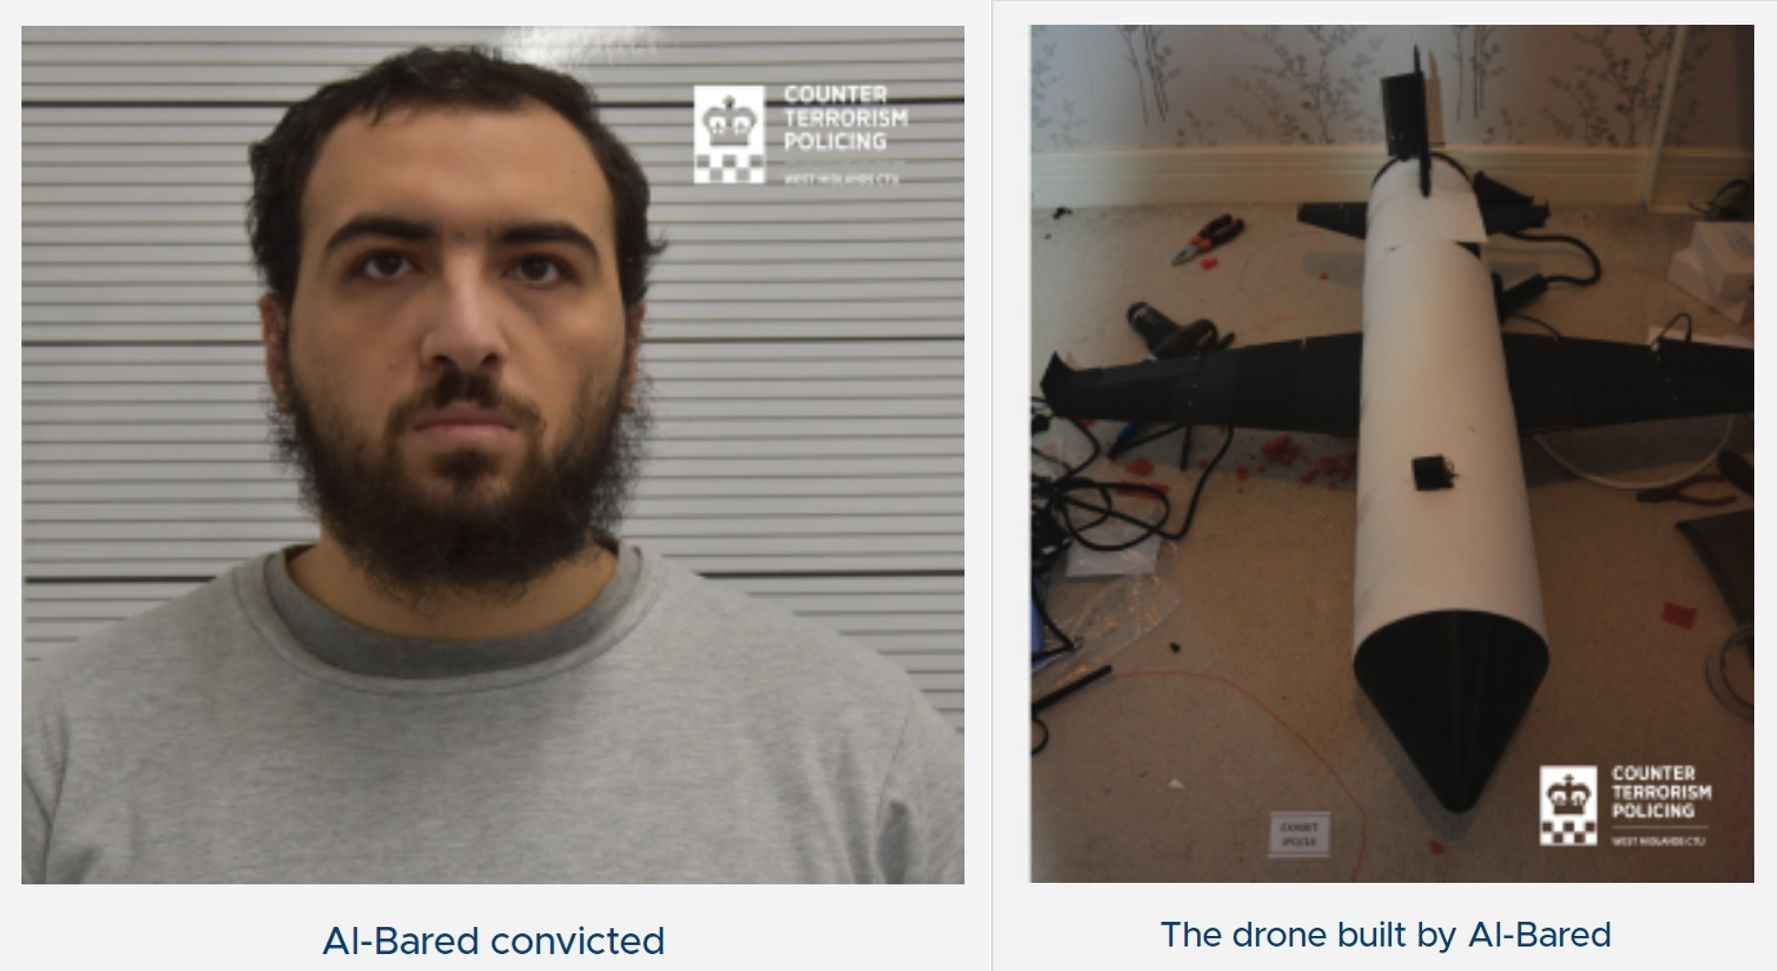 Imágenes de Mohamad Al Bared, el estudiante de doctorado británico que ha sido declarado culpable de terrorismo por fabricar un dron armado para el Estado Islámico, y del dron en cuestión (Foto 'Counter Terrorism Policing')